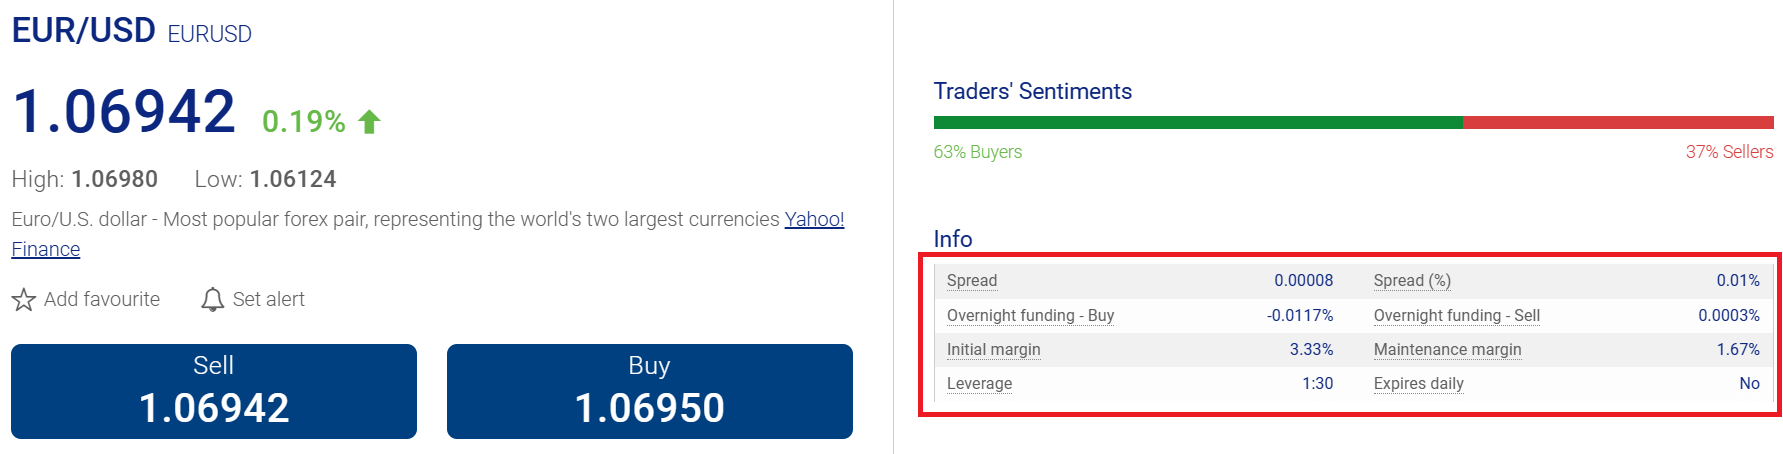 Plus500 EURUSD Trading Conditions